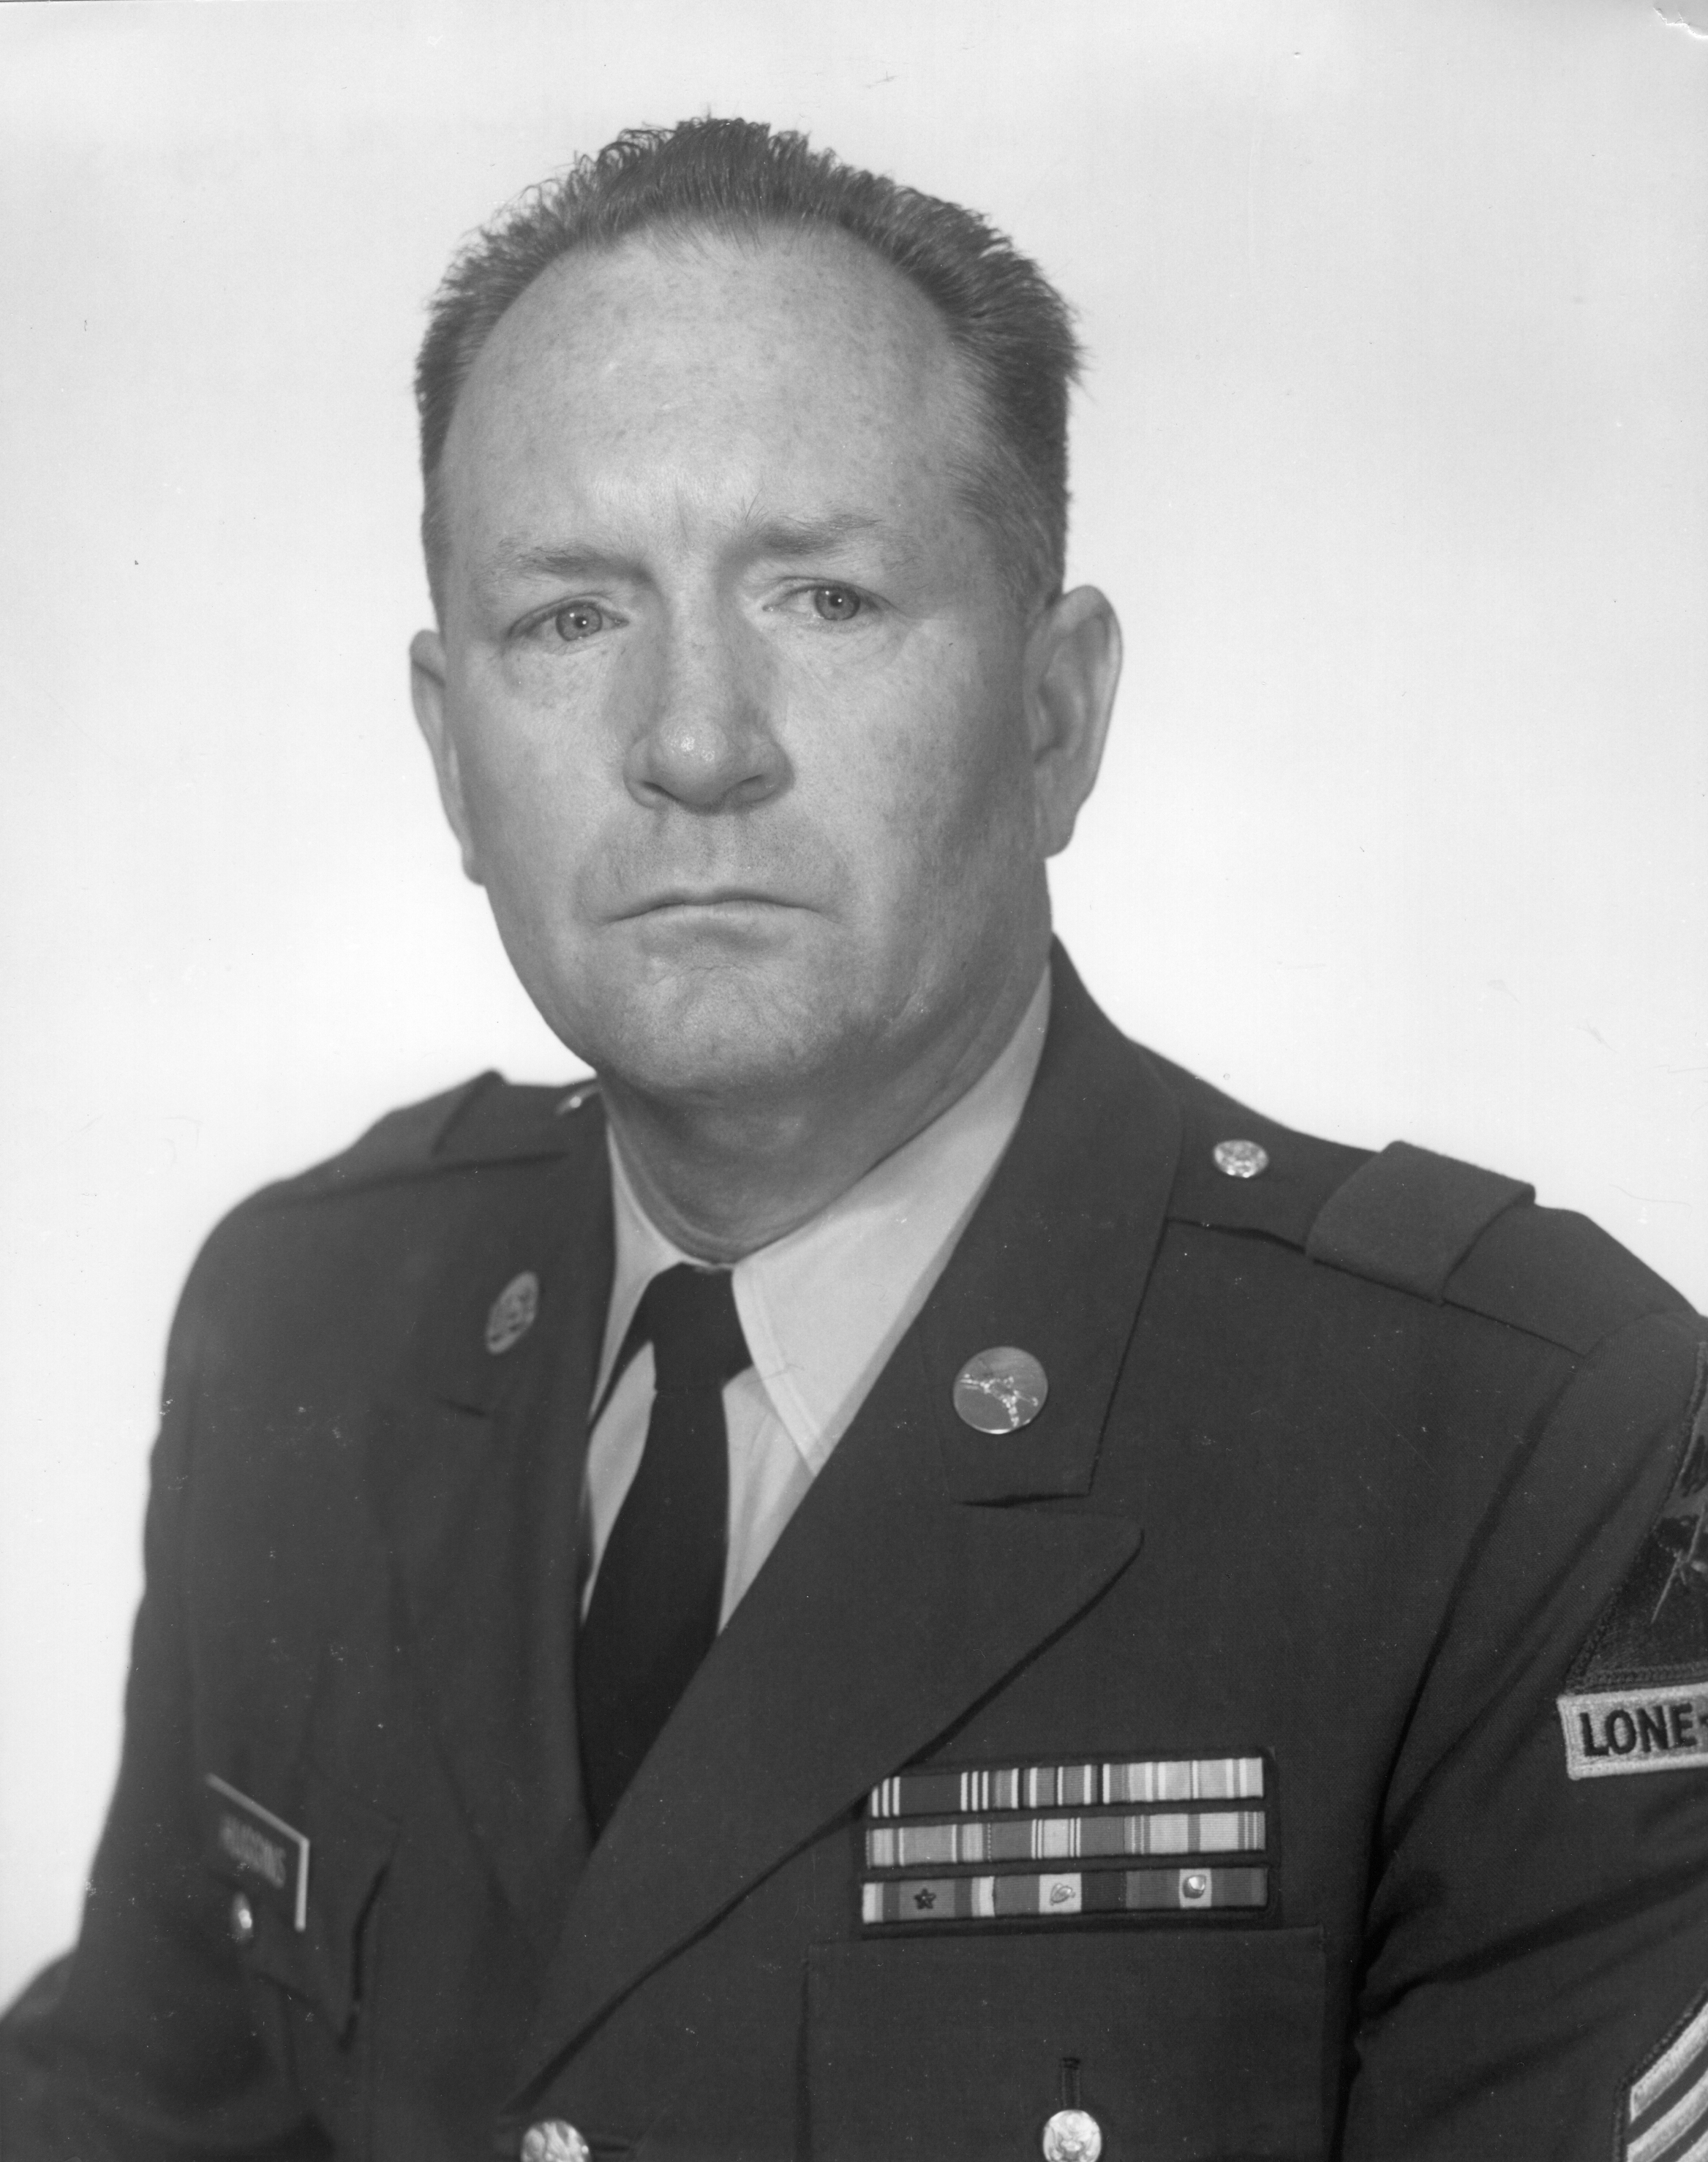 Command Sergeant Major William M. Huggins